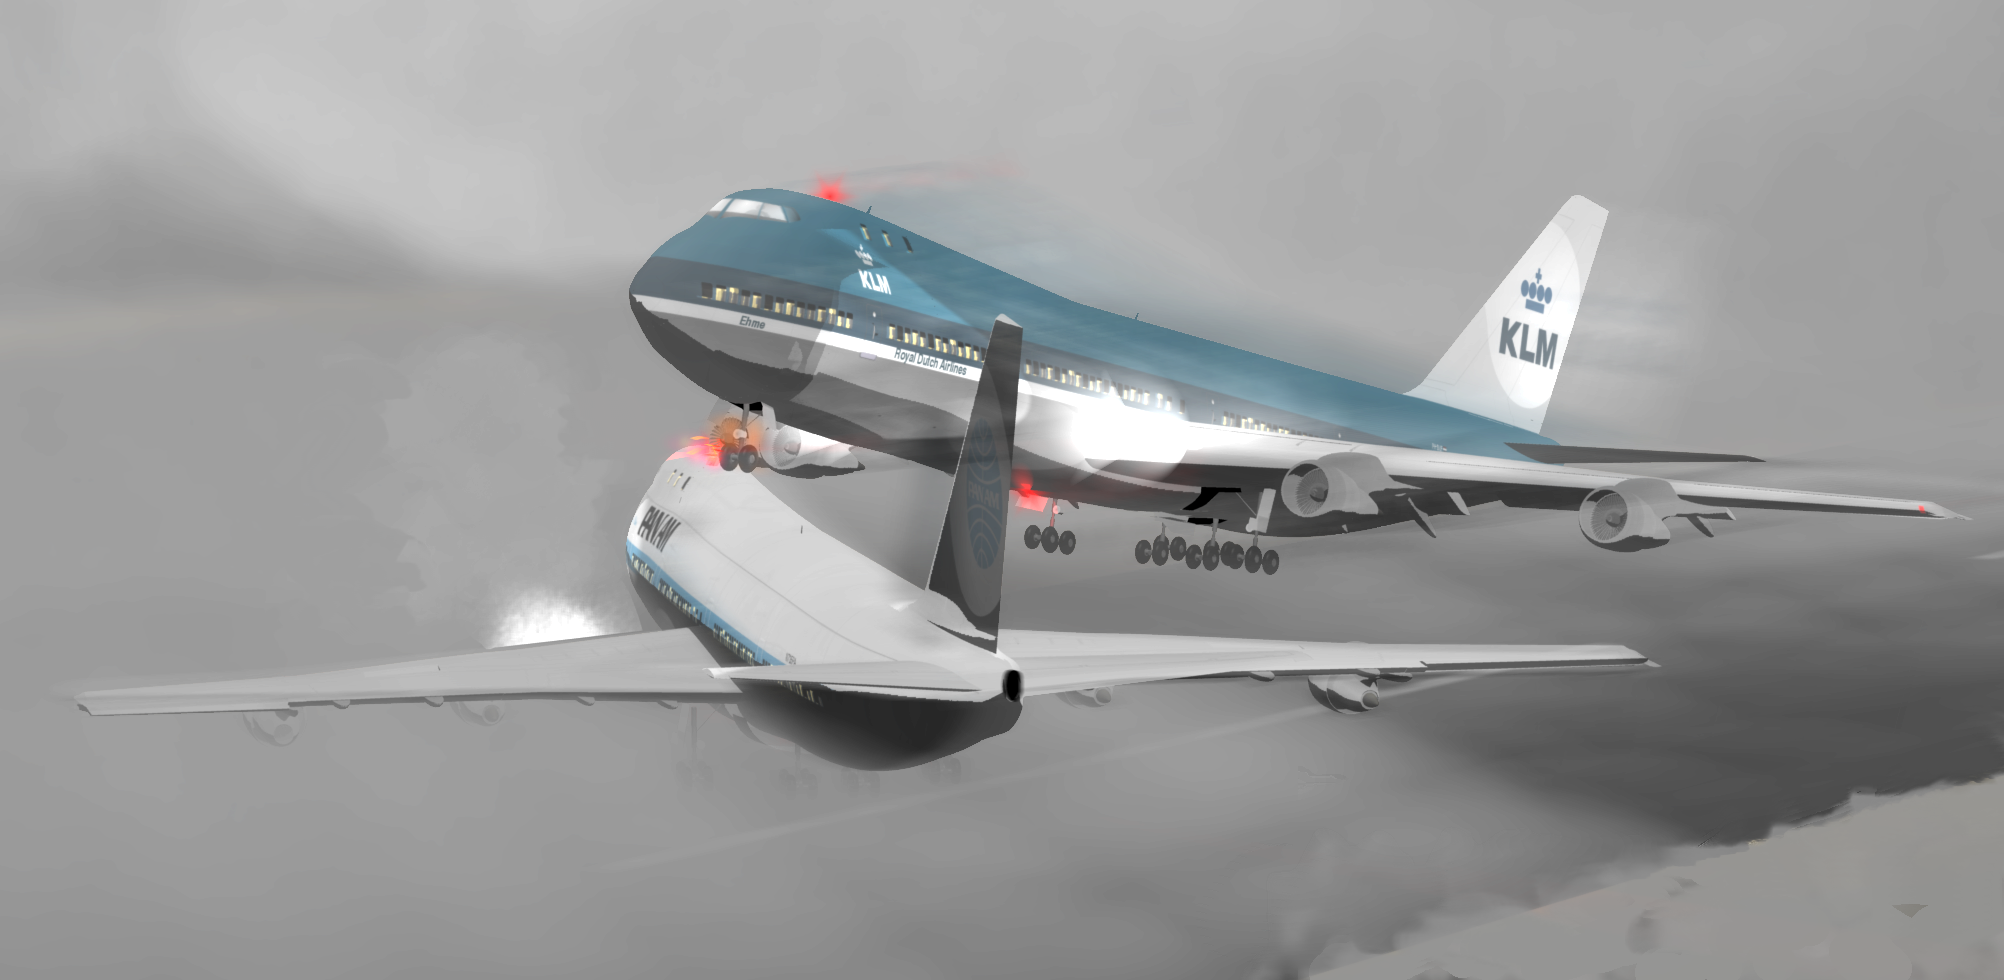 Аэрофлот 593. Столкновение ил 76 и Боинг 747. Столкновение над Чархи Дадри 1996. Boeing 747 ил 76. Самое крупное столкновение в воздухе. Ил-76 и Боинг-747.